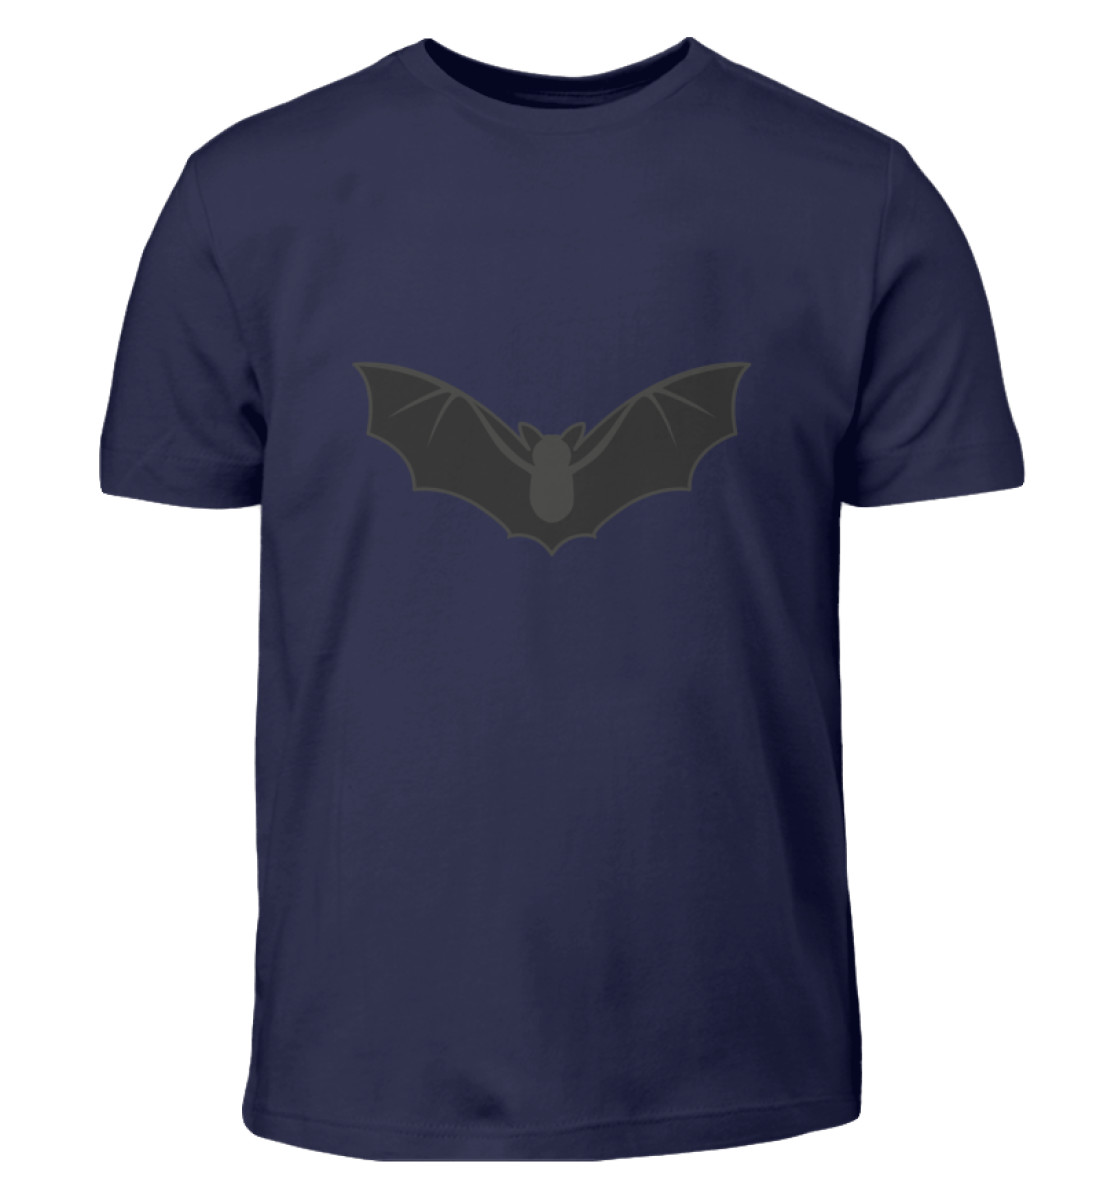 Fledermaus groß - Kinder T-Shirt-198